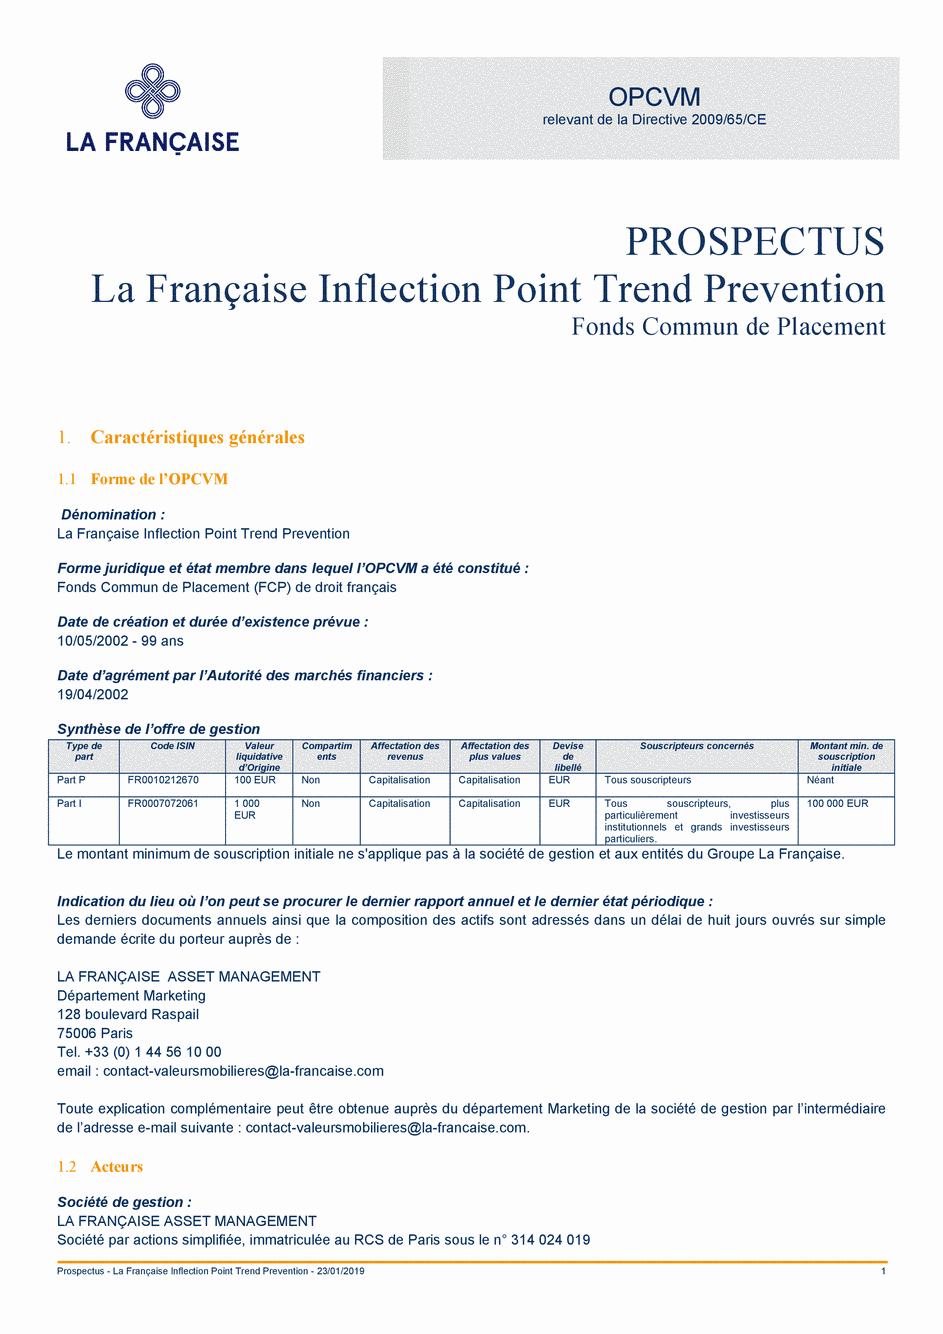 Prospectus La Française Inflection Point Trend Prévention - Part P - 23/01/2019 - Français